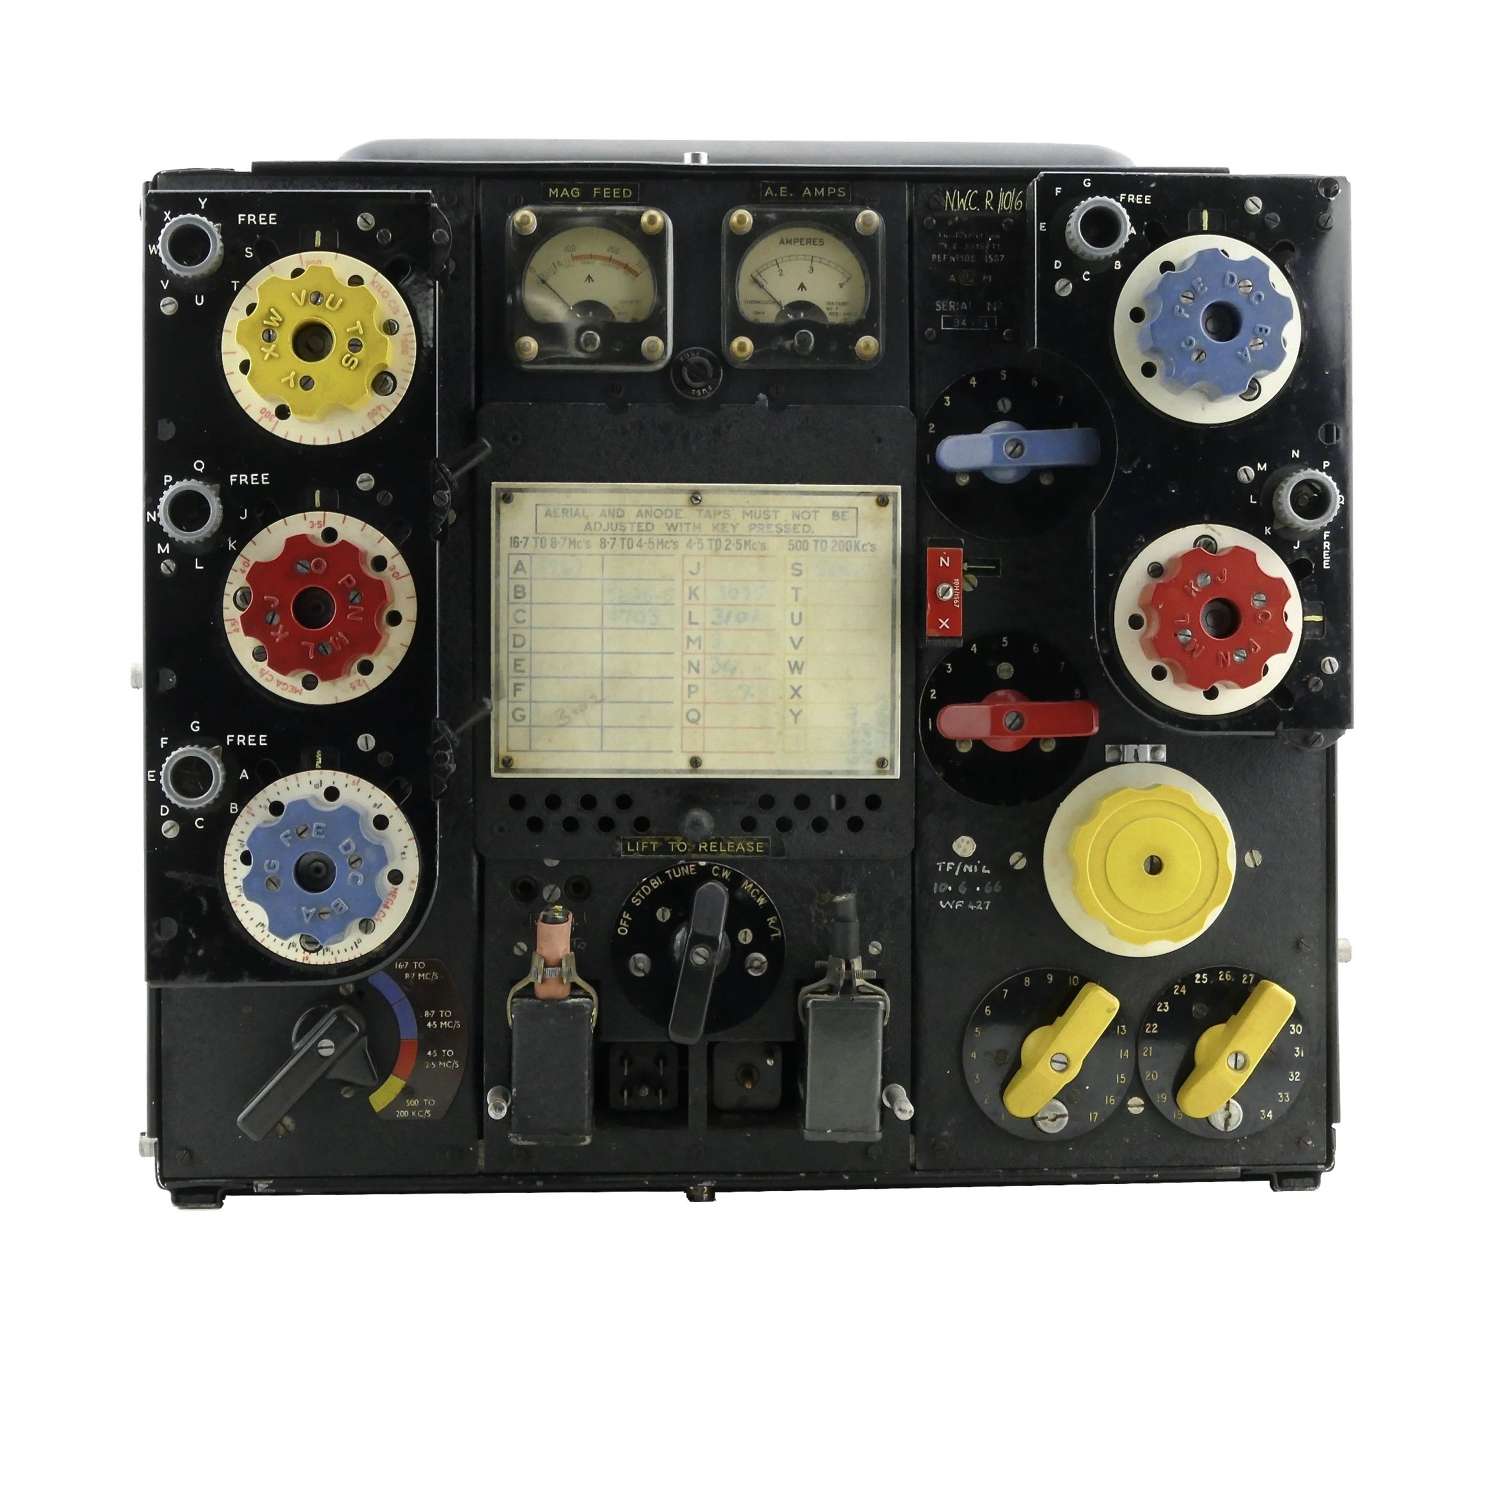 RAF T1154M transmitter